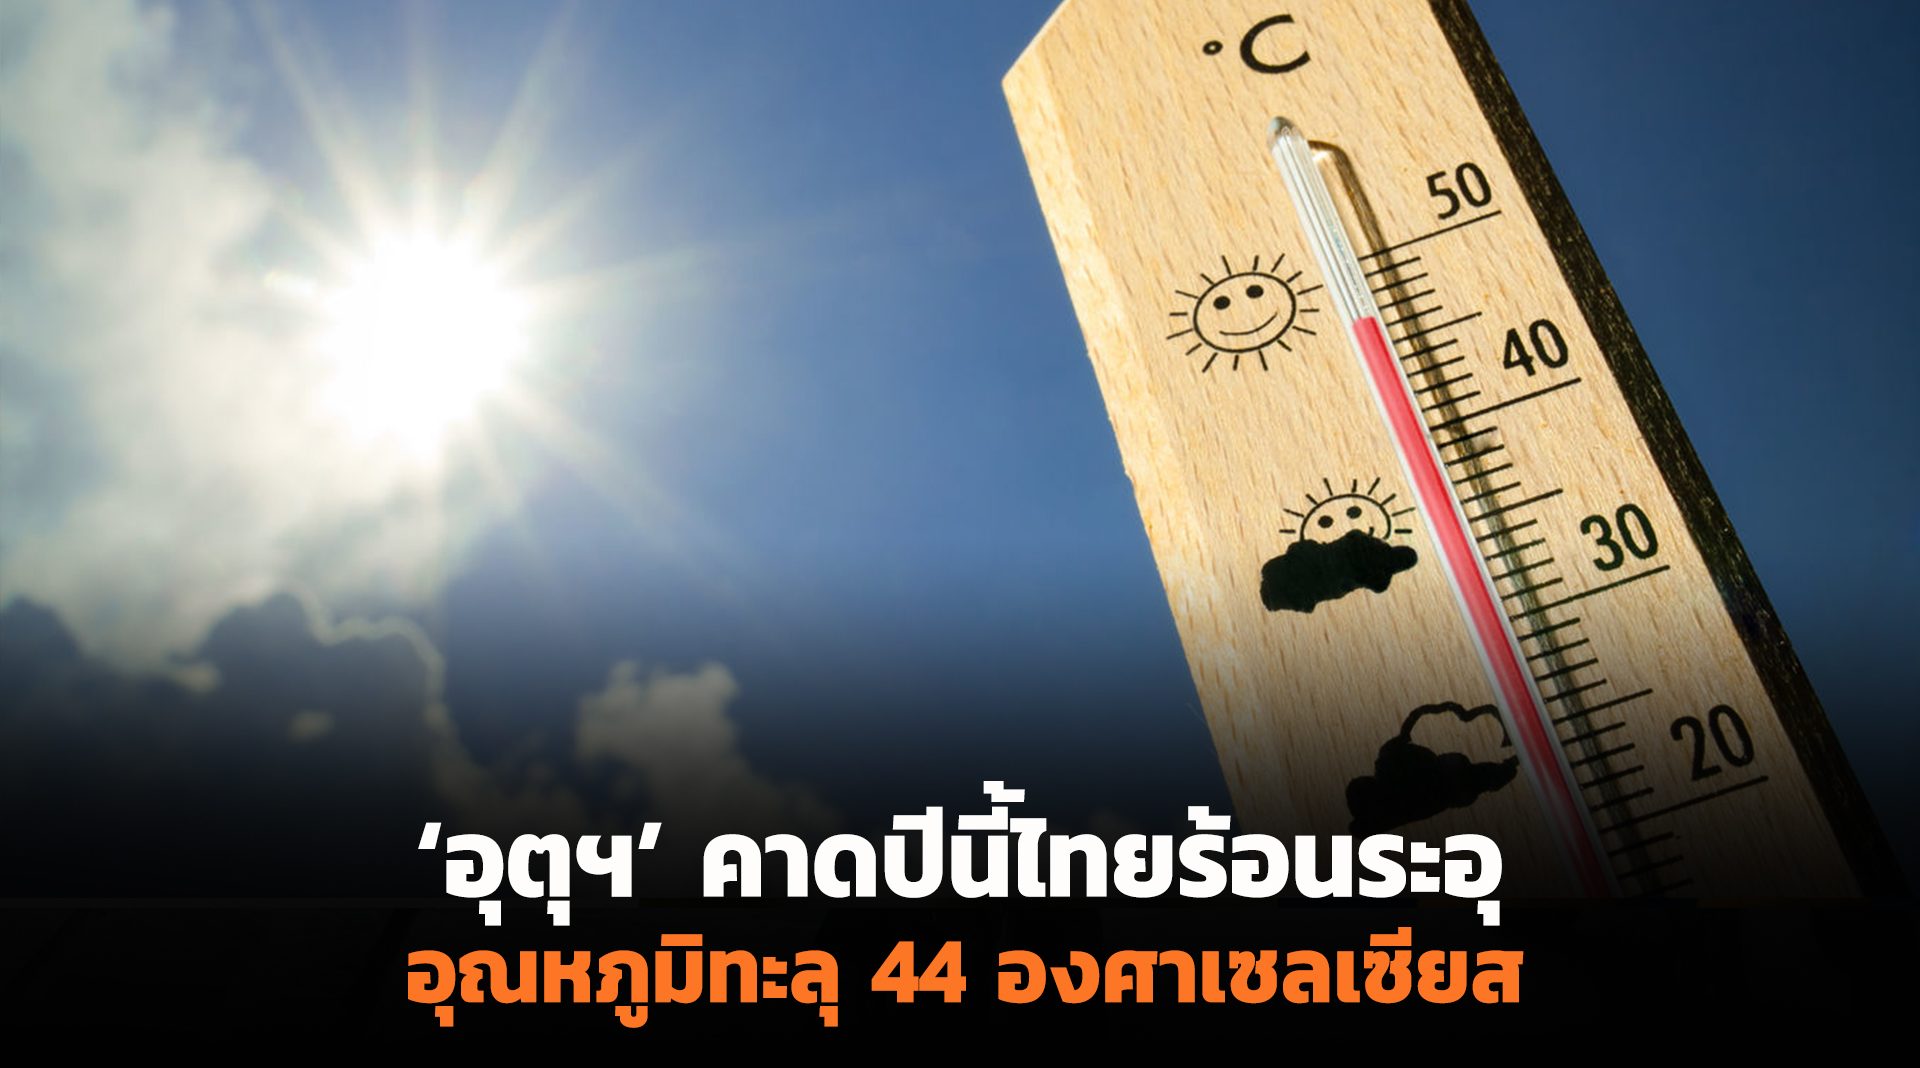 ‘อุตุฯ’ คาดปีนี้ไทยร้อนระอุ อุณหภูมิทะลุ 44 องศา